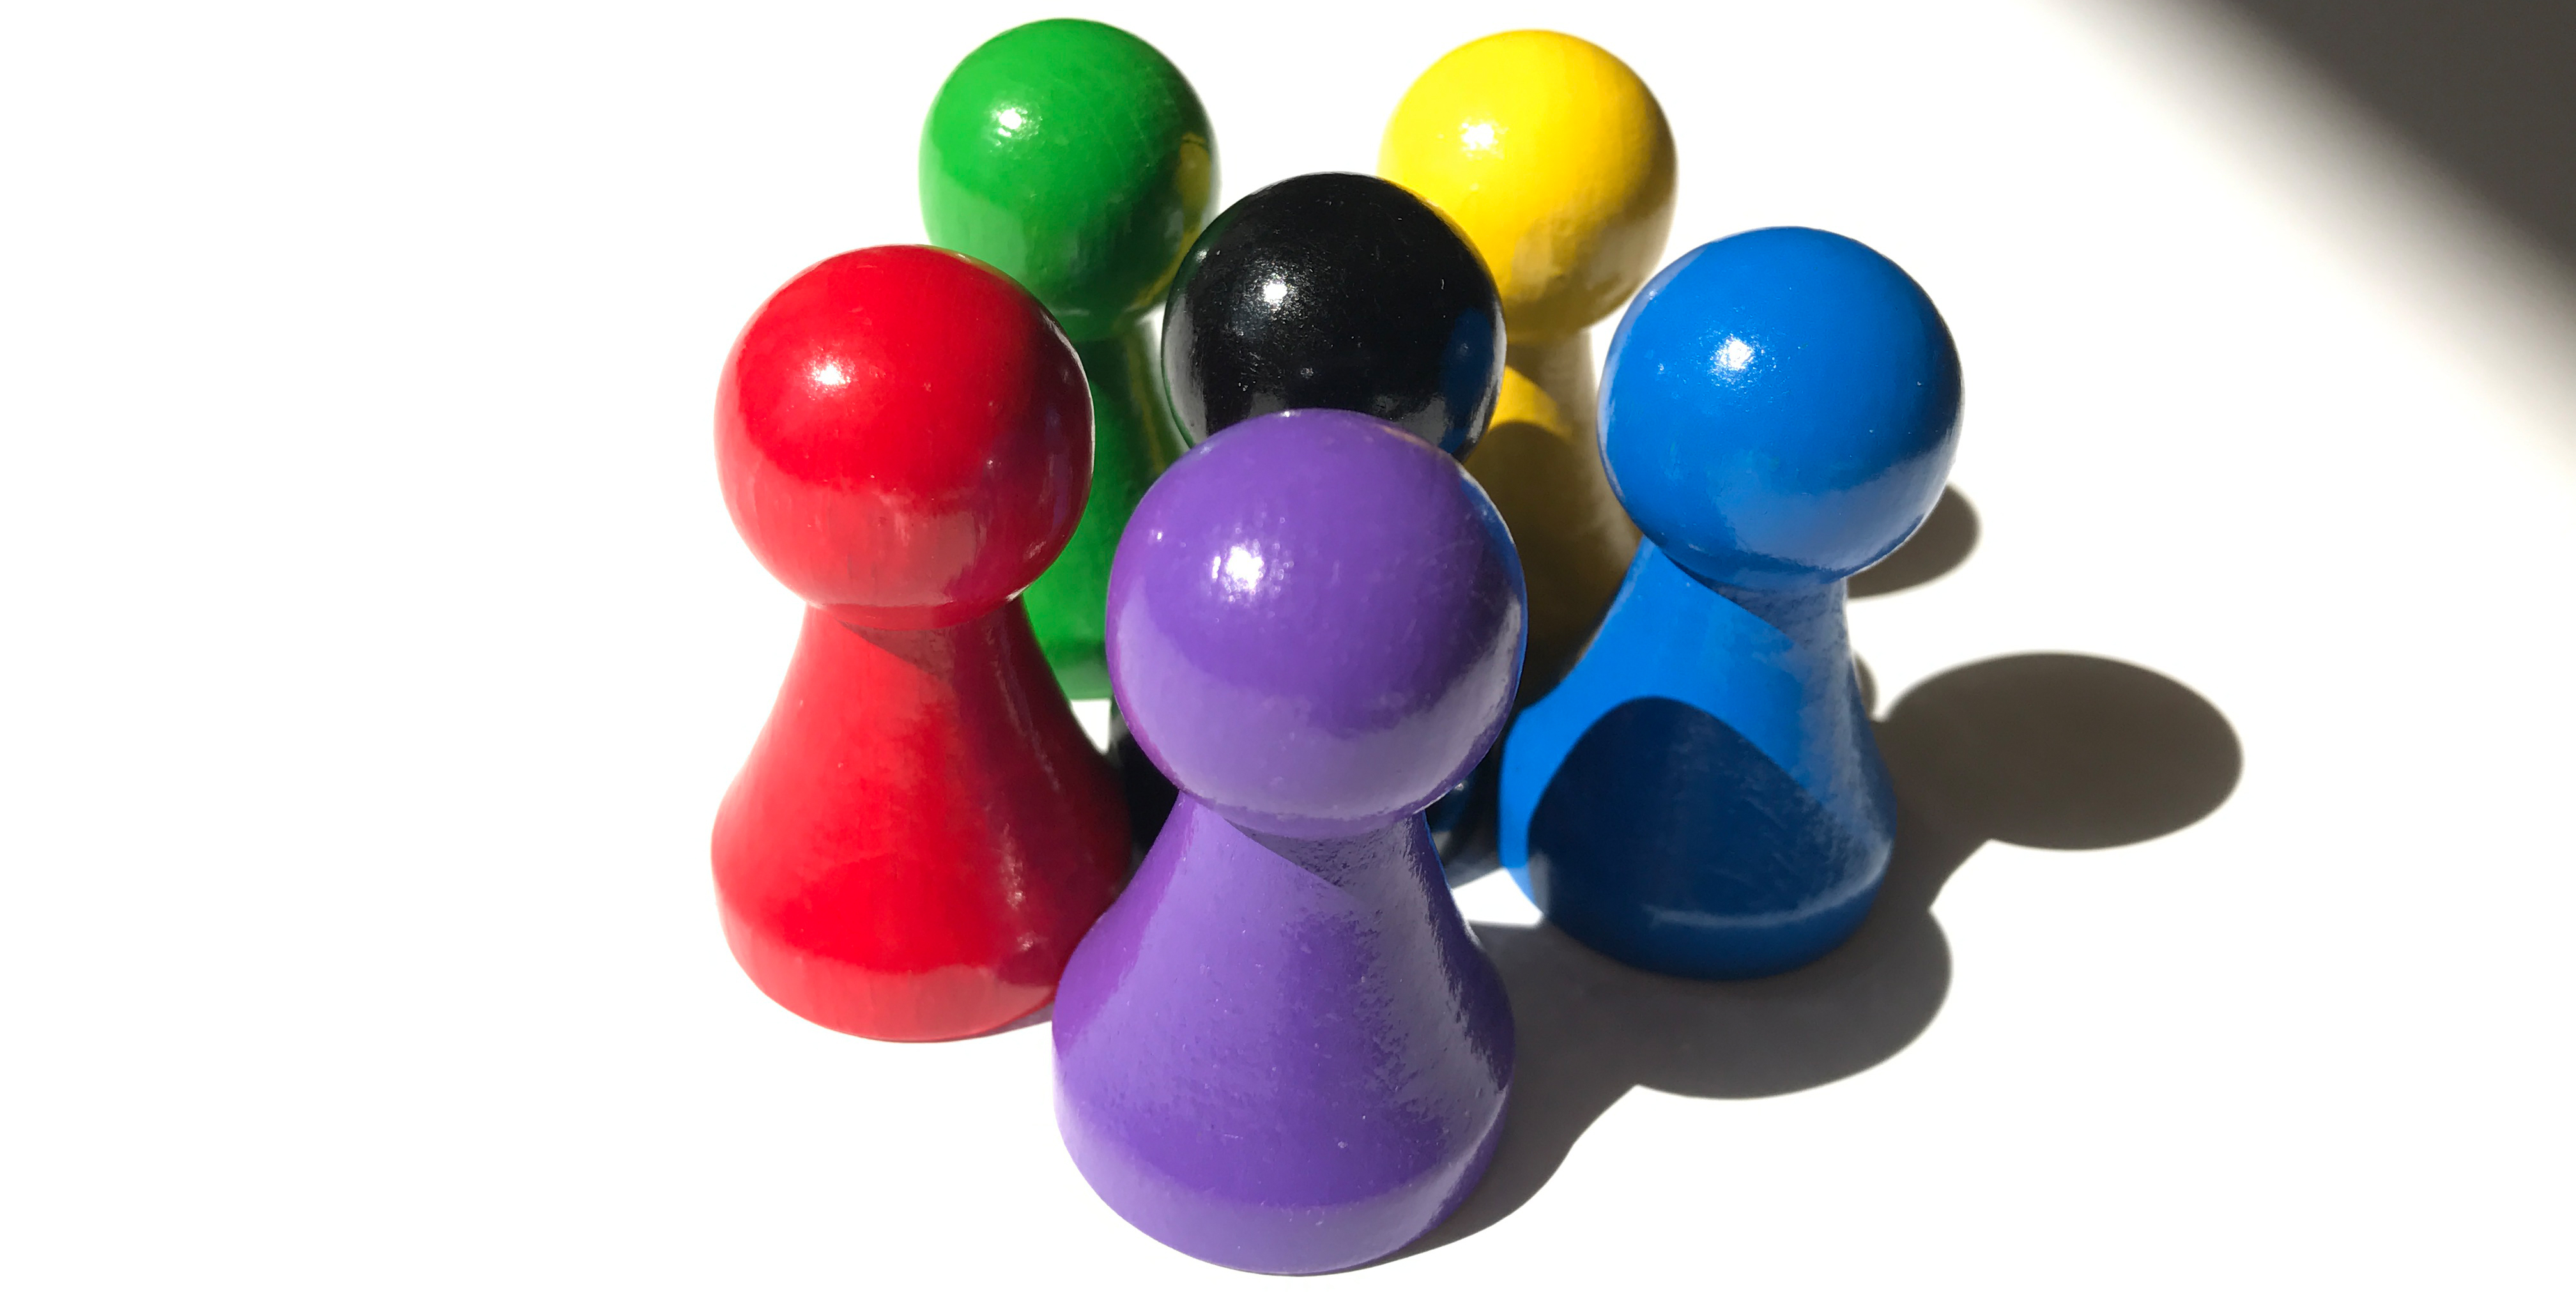 60 Stück Halmakegel Standard aus Holz 25 mm 4 Farben gemischt Spielfiguren 